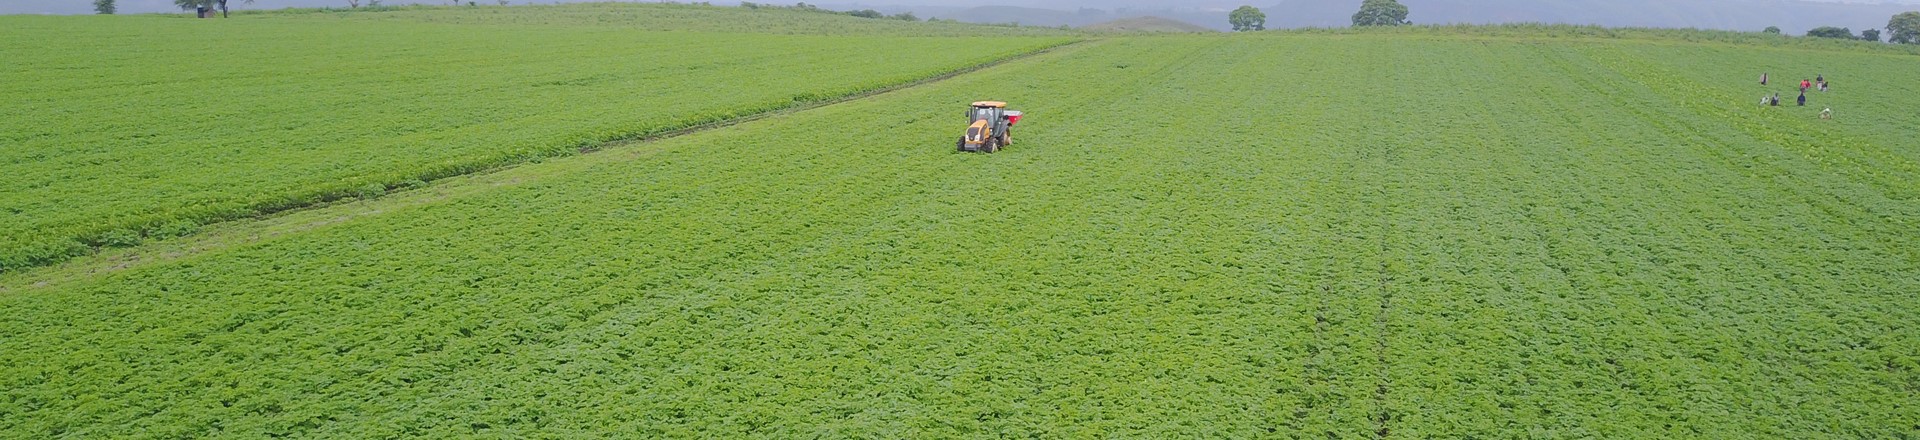 Tractor working in a potato field in Kenya (1)